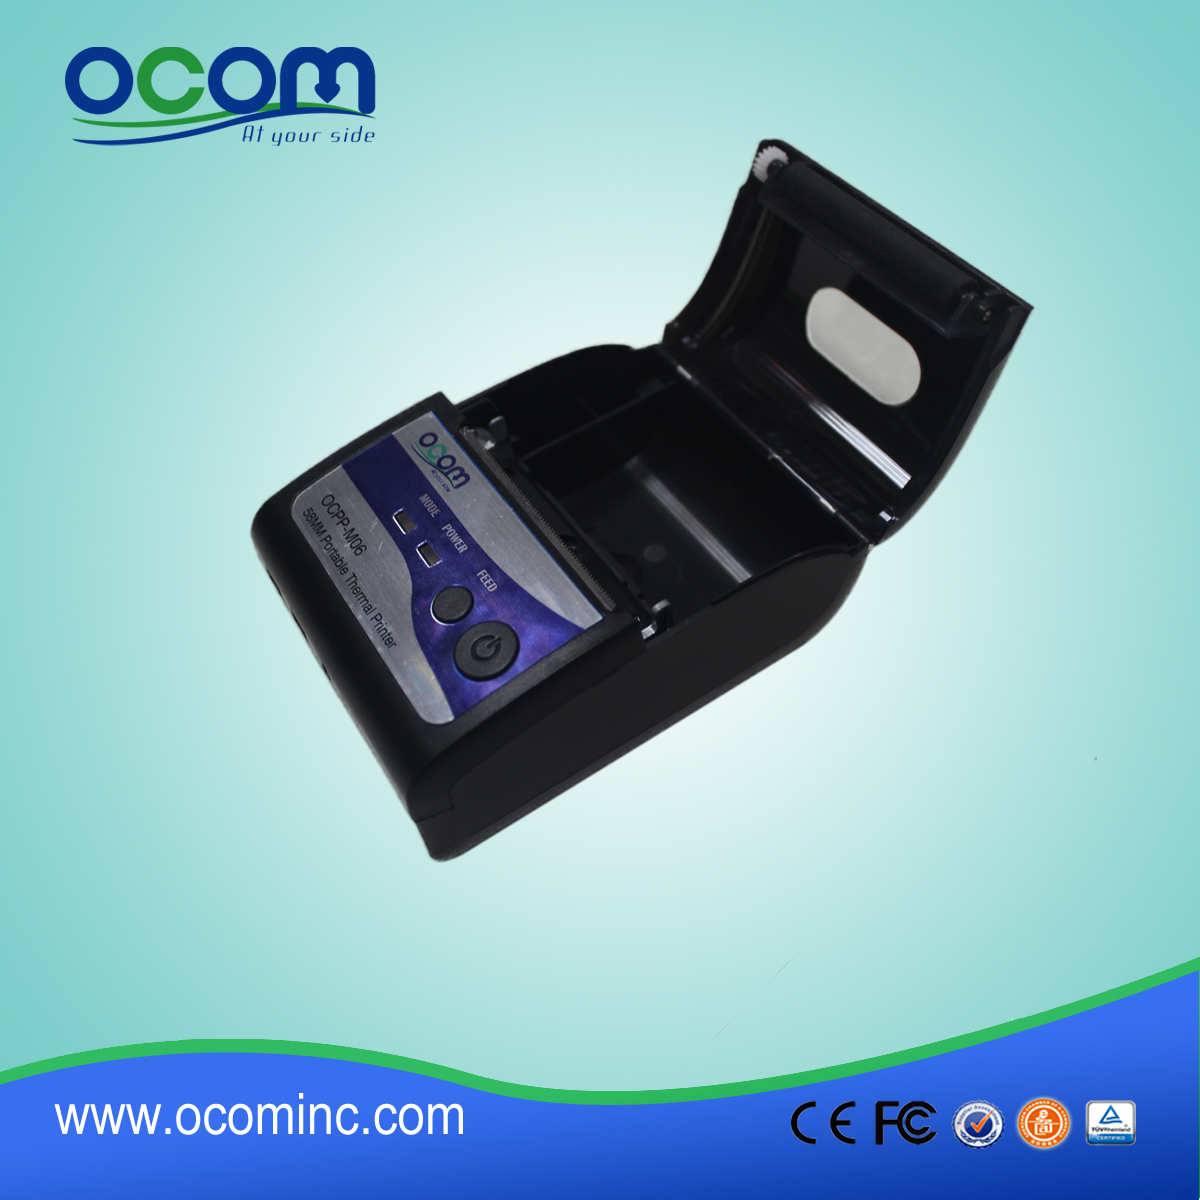 (OCPP-M06) OCOM Hot verkaufen niedrige Kosten android Drucker pos, pos Drucker 58mm